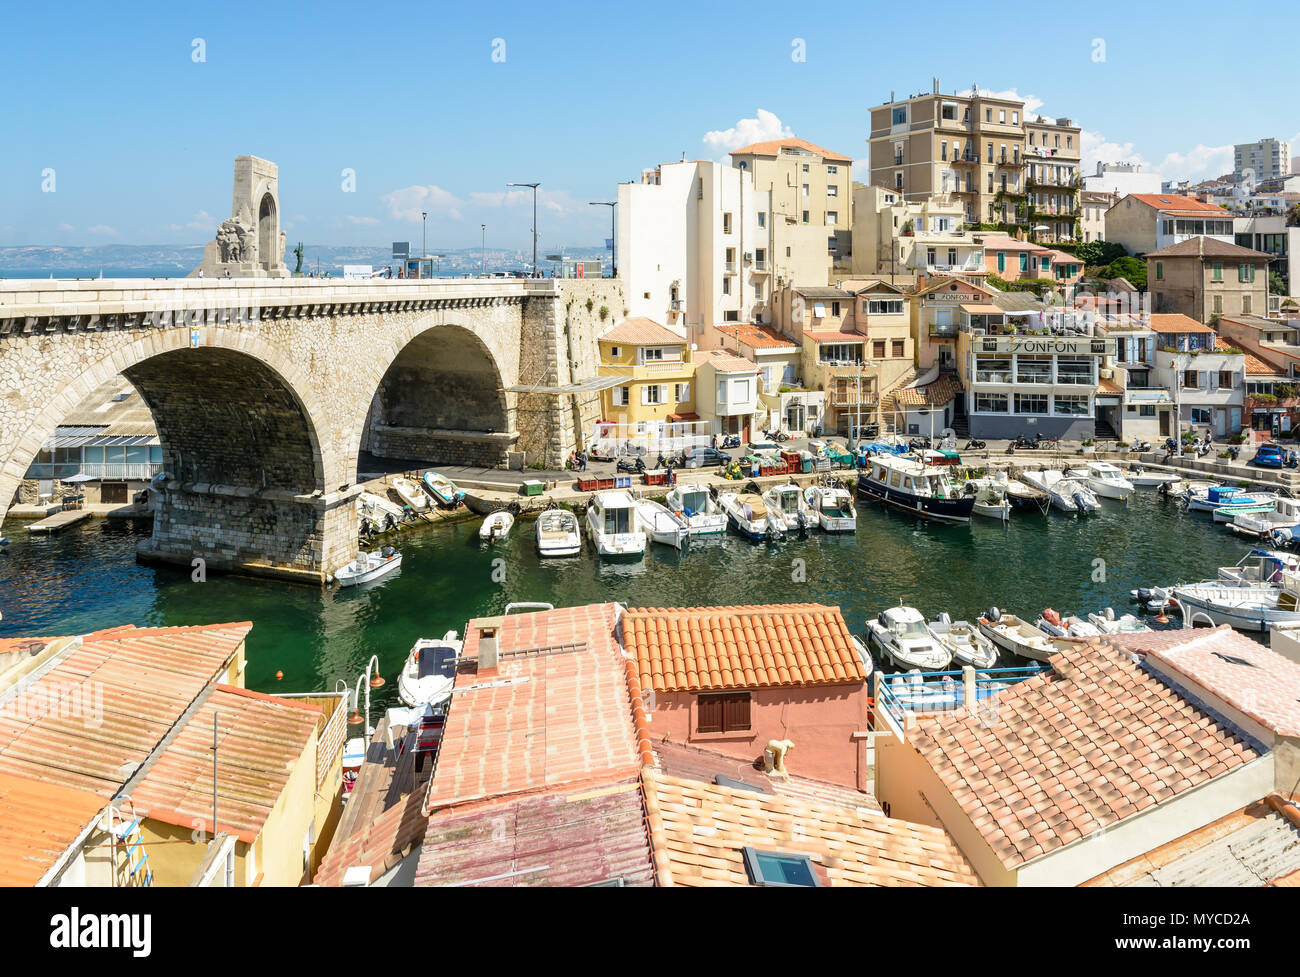 Marseille, France - 19 mai 2018 : vue sur le petit port de pêche du Vallon des Auffes montrant les bateaux, cabanons et pont-route de la Kennedy c Banque D'Images